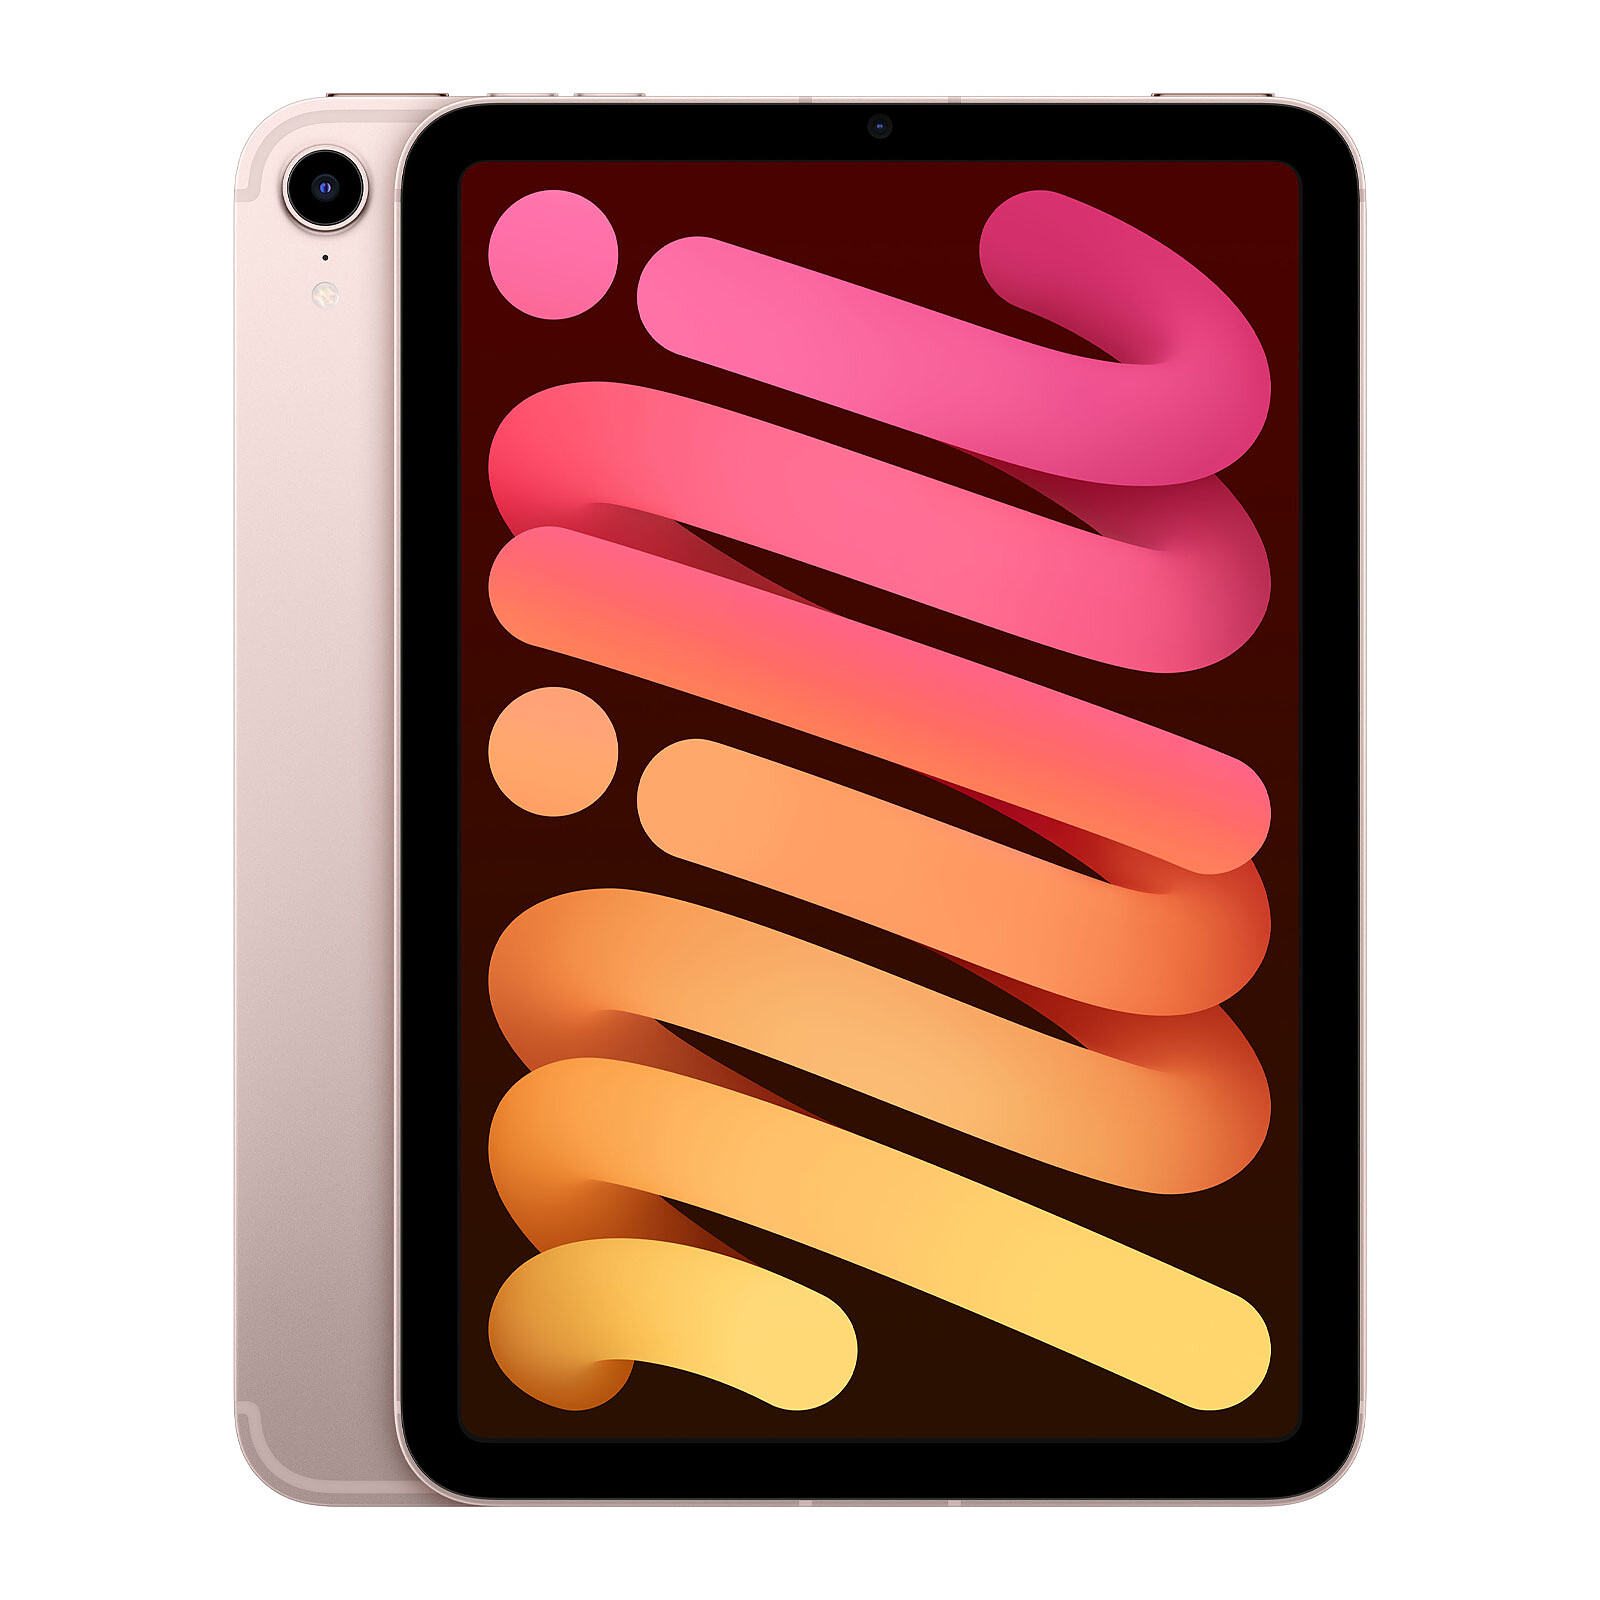 Apple iPad mini (2021) 64 GB Wi-Fi Cellular Pink Tablet computer Apple  on LDLC